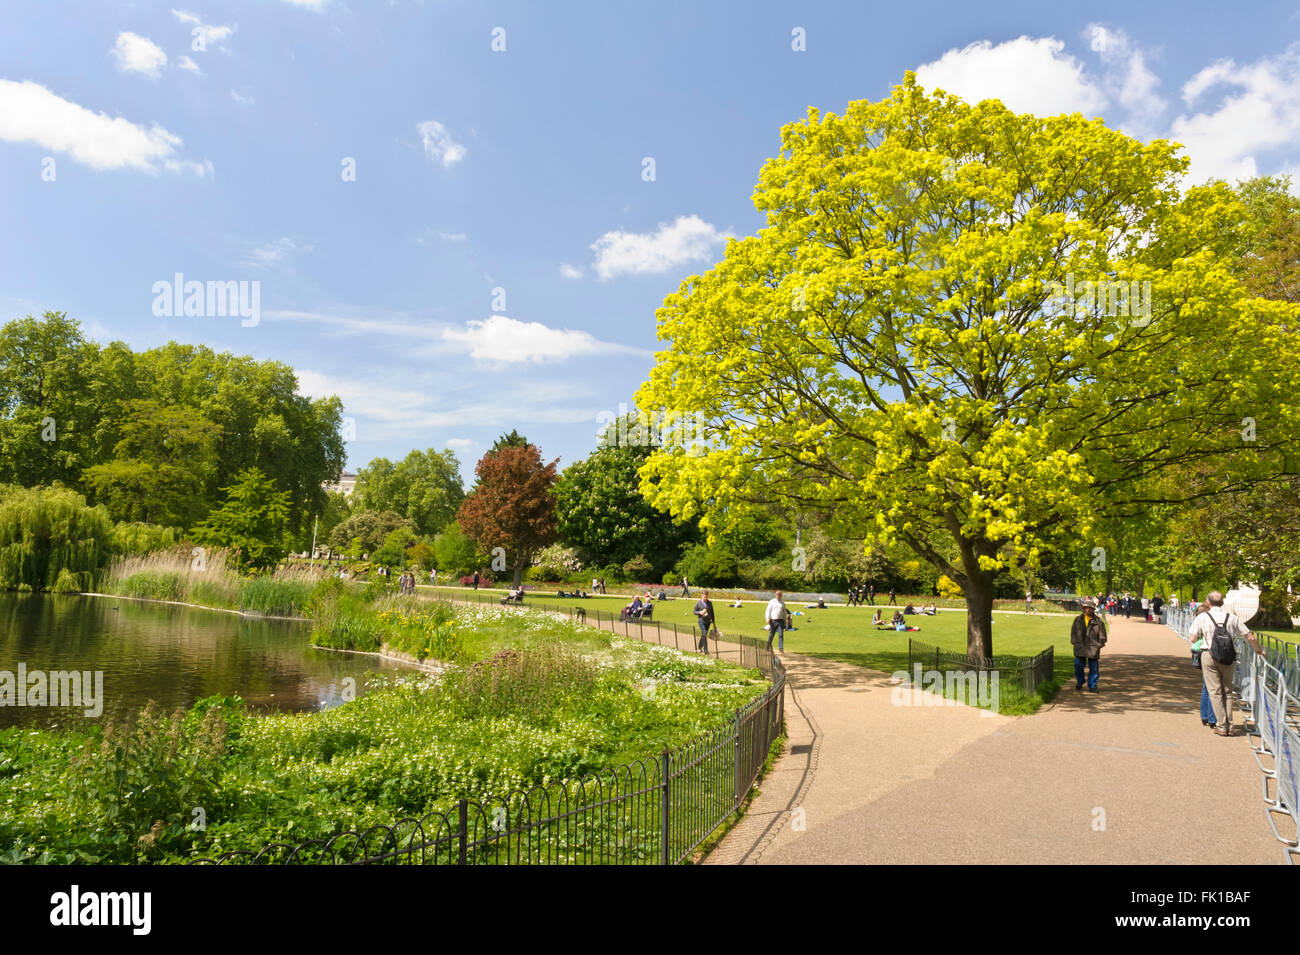 St James Royal Park, ein berühmter Park im Zentrum von London und der älteste der königlichen Parks in London, Vereinigtes Königreich. Stockfoto